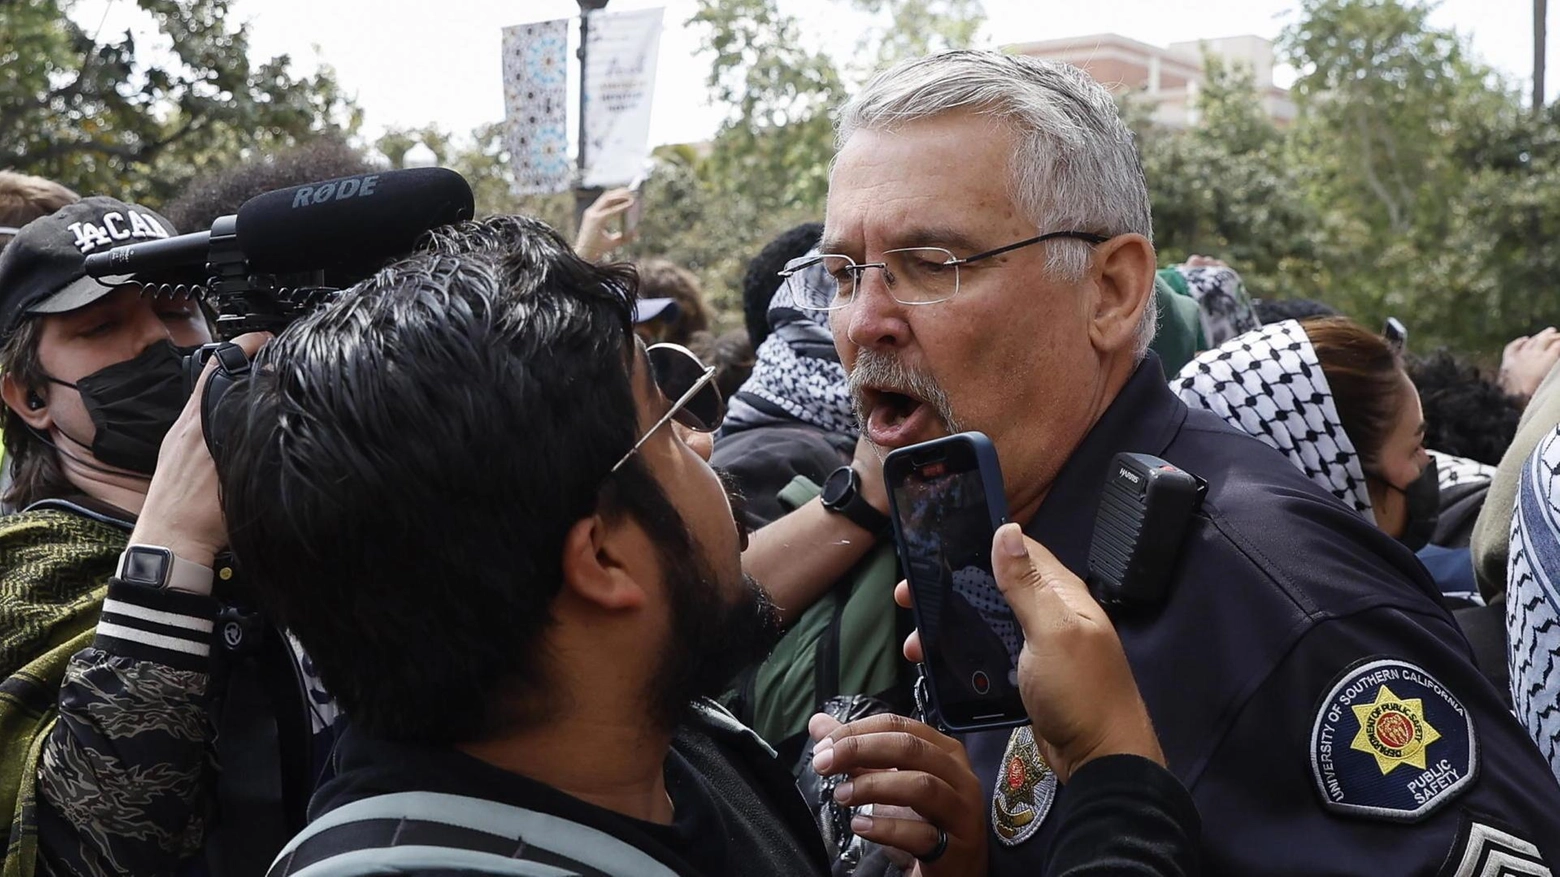 Proteste filo-palestinesi dilagano nei college statunitensi, con almeno 400 fermi in una settimana. Manifestazioni si estendono a diversi campus, chiedendo il taglio dei legami con aziende israeliane. Anche a Parigi tensioni per proteste studentesche.